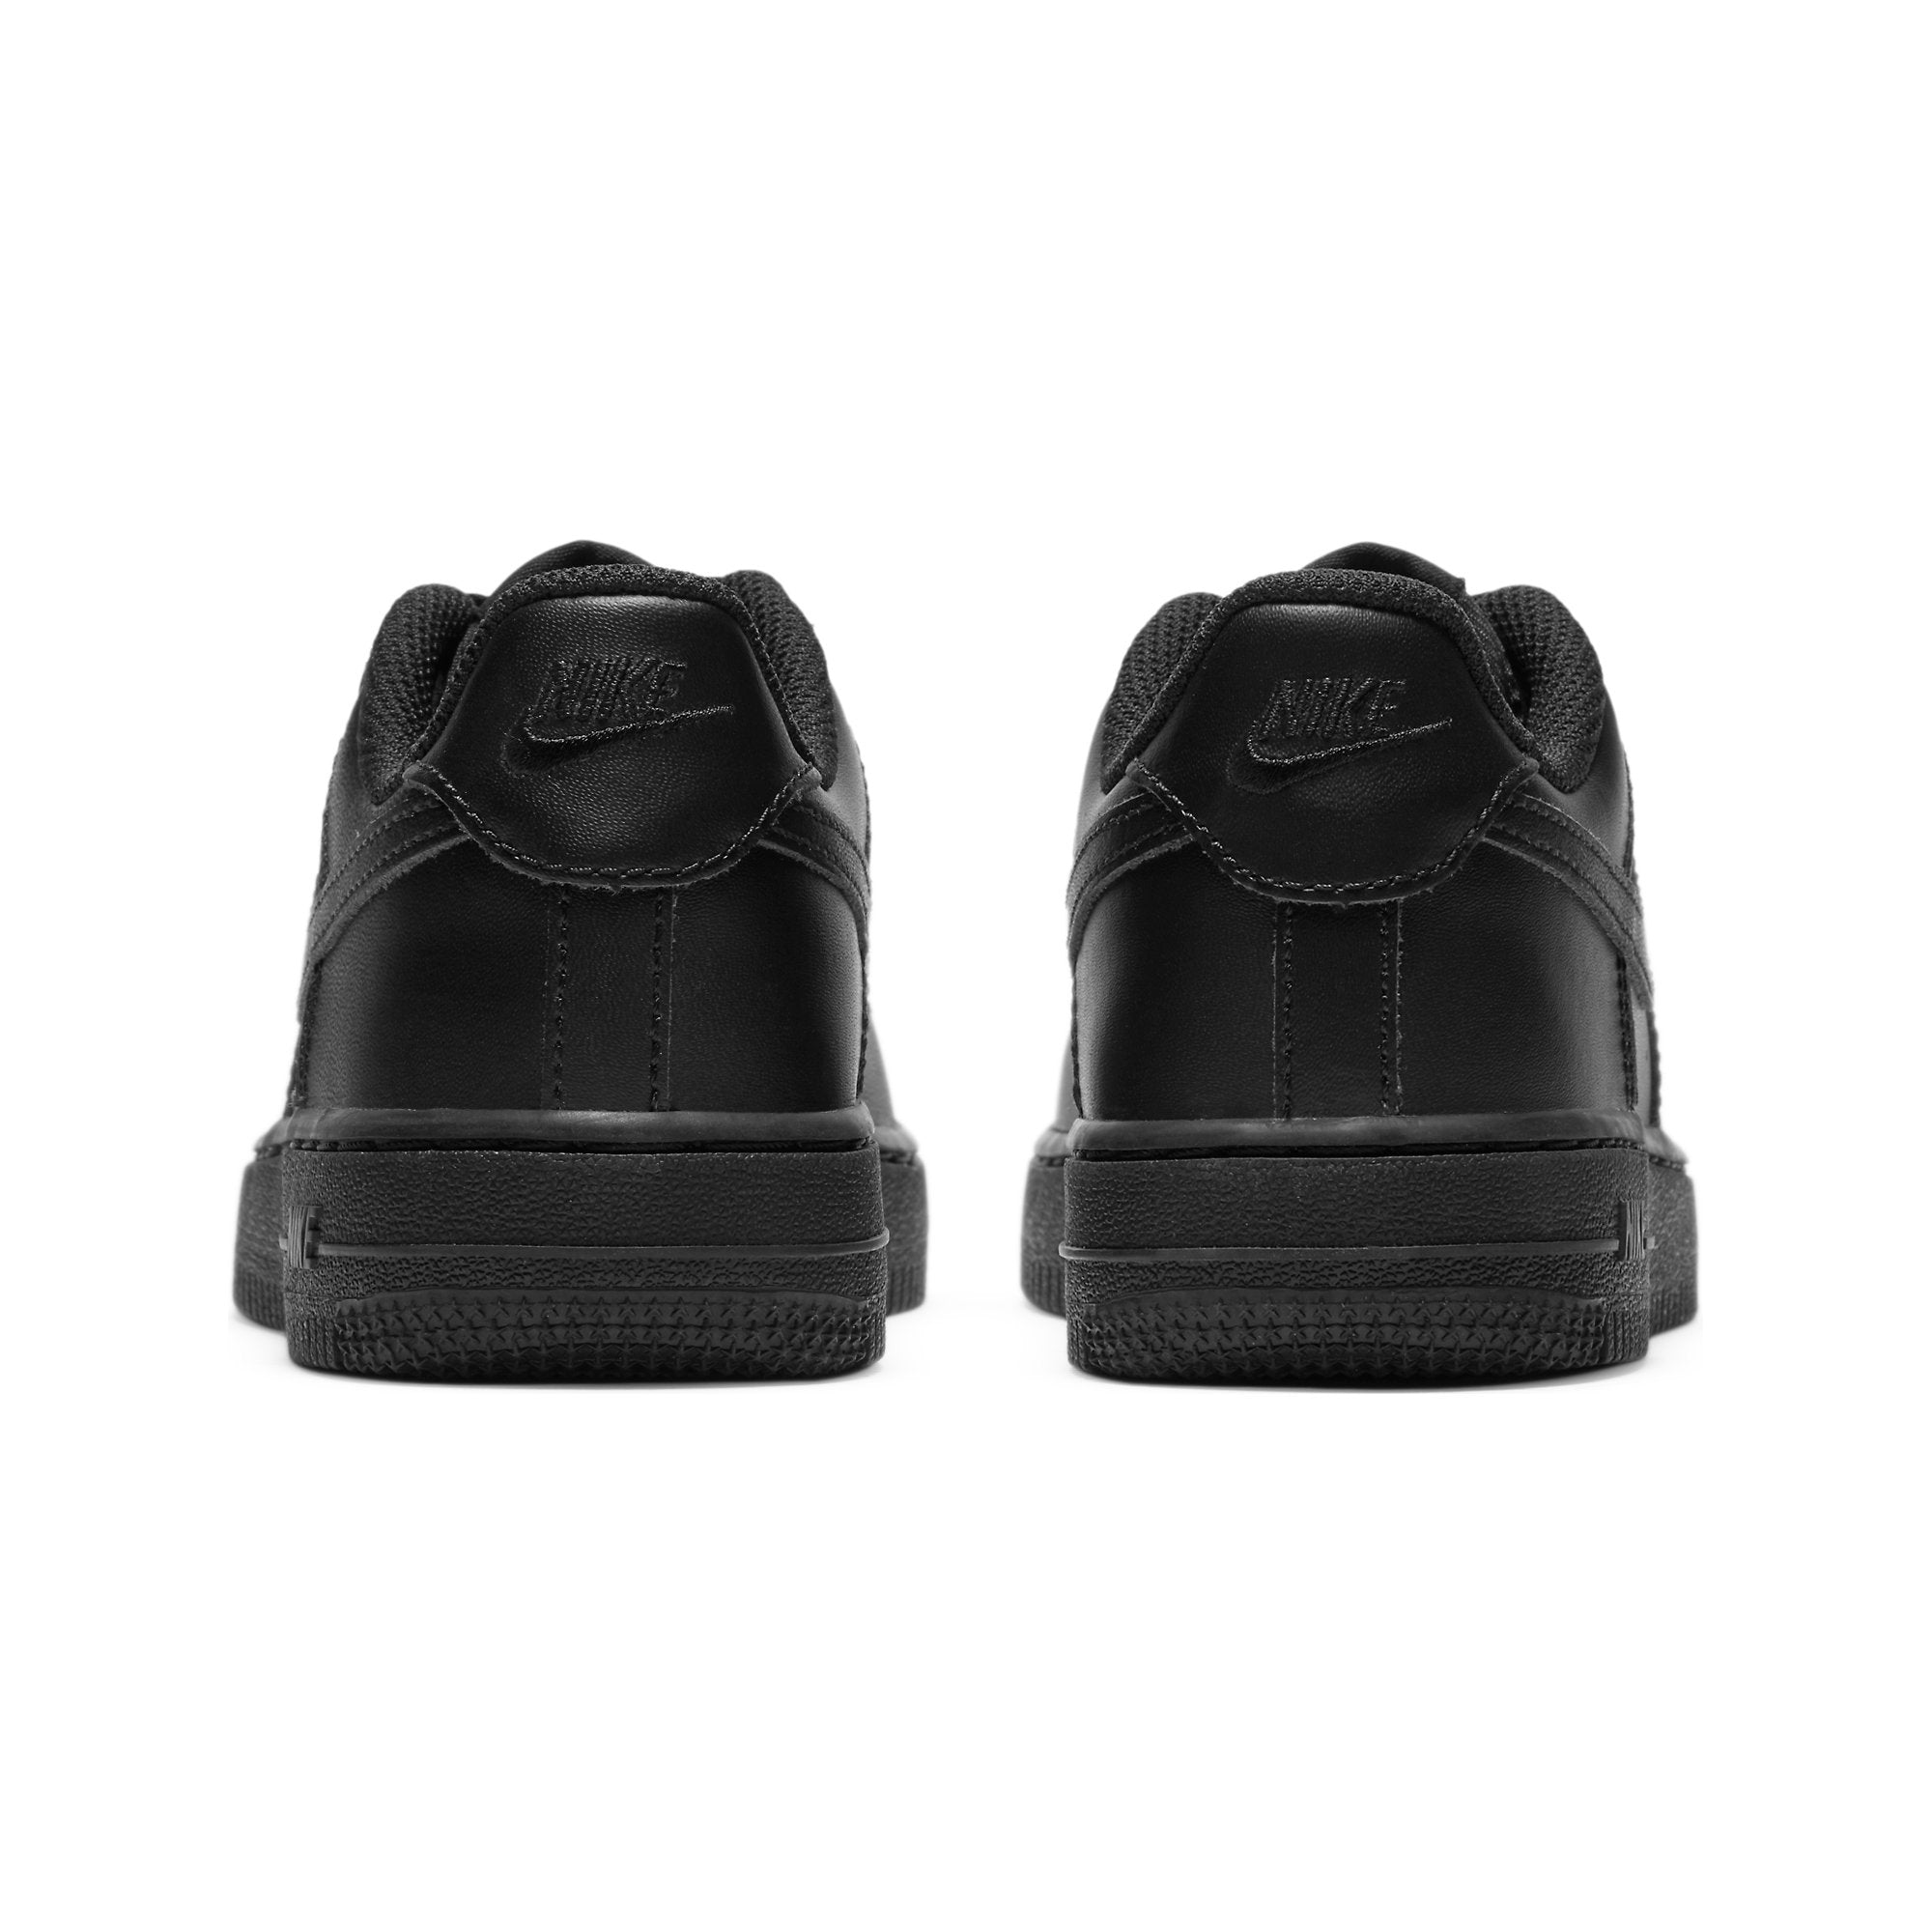 Zapatilla Nike Air Force de Niños color Negro - Credichips